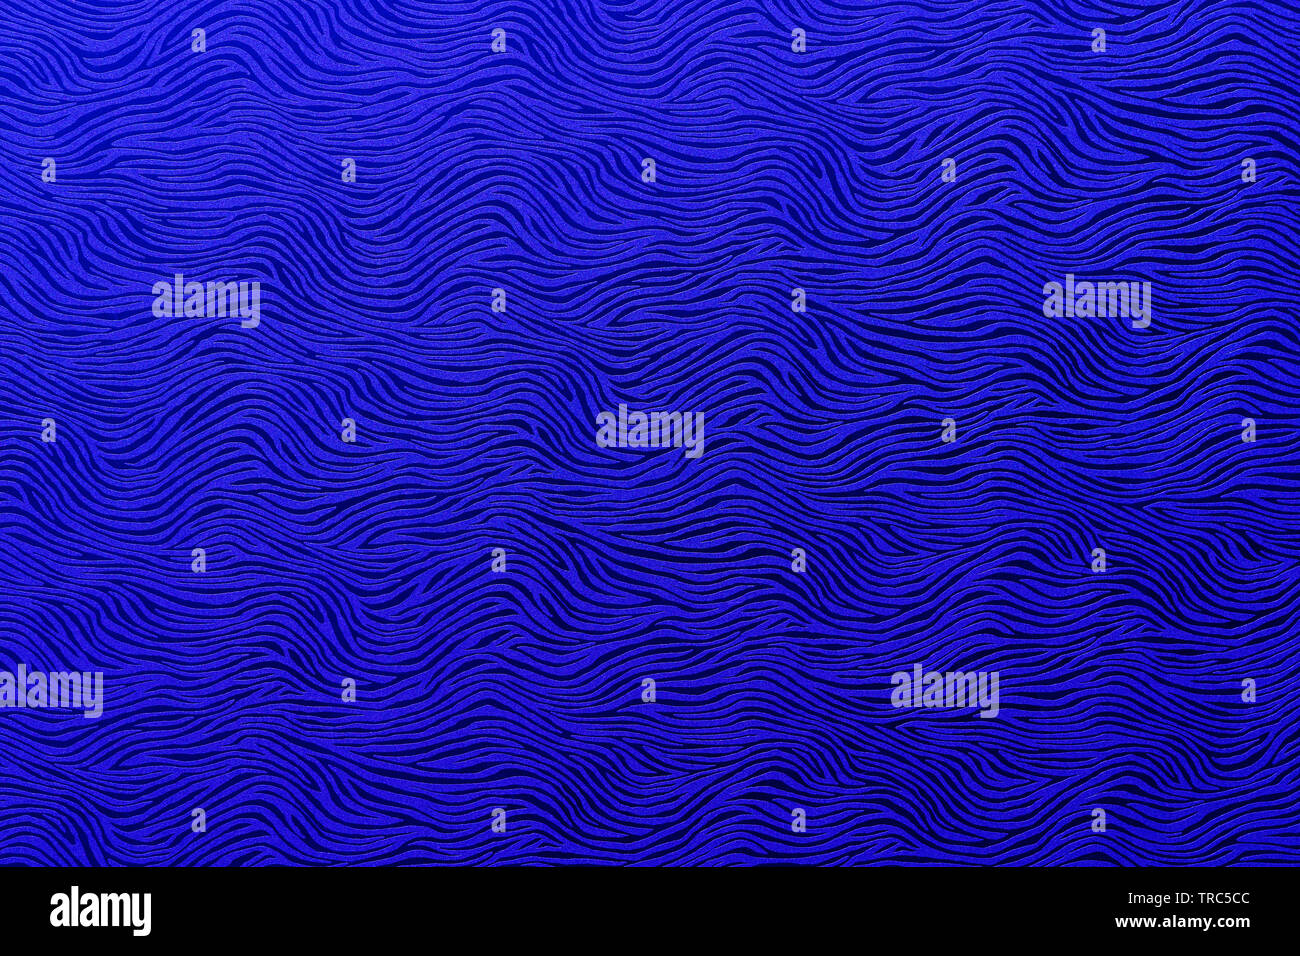 Abstracto azul royal patrón ondulado Foto de stock